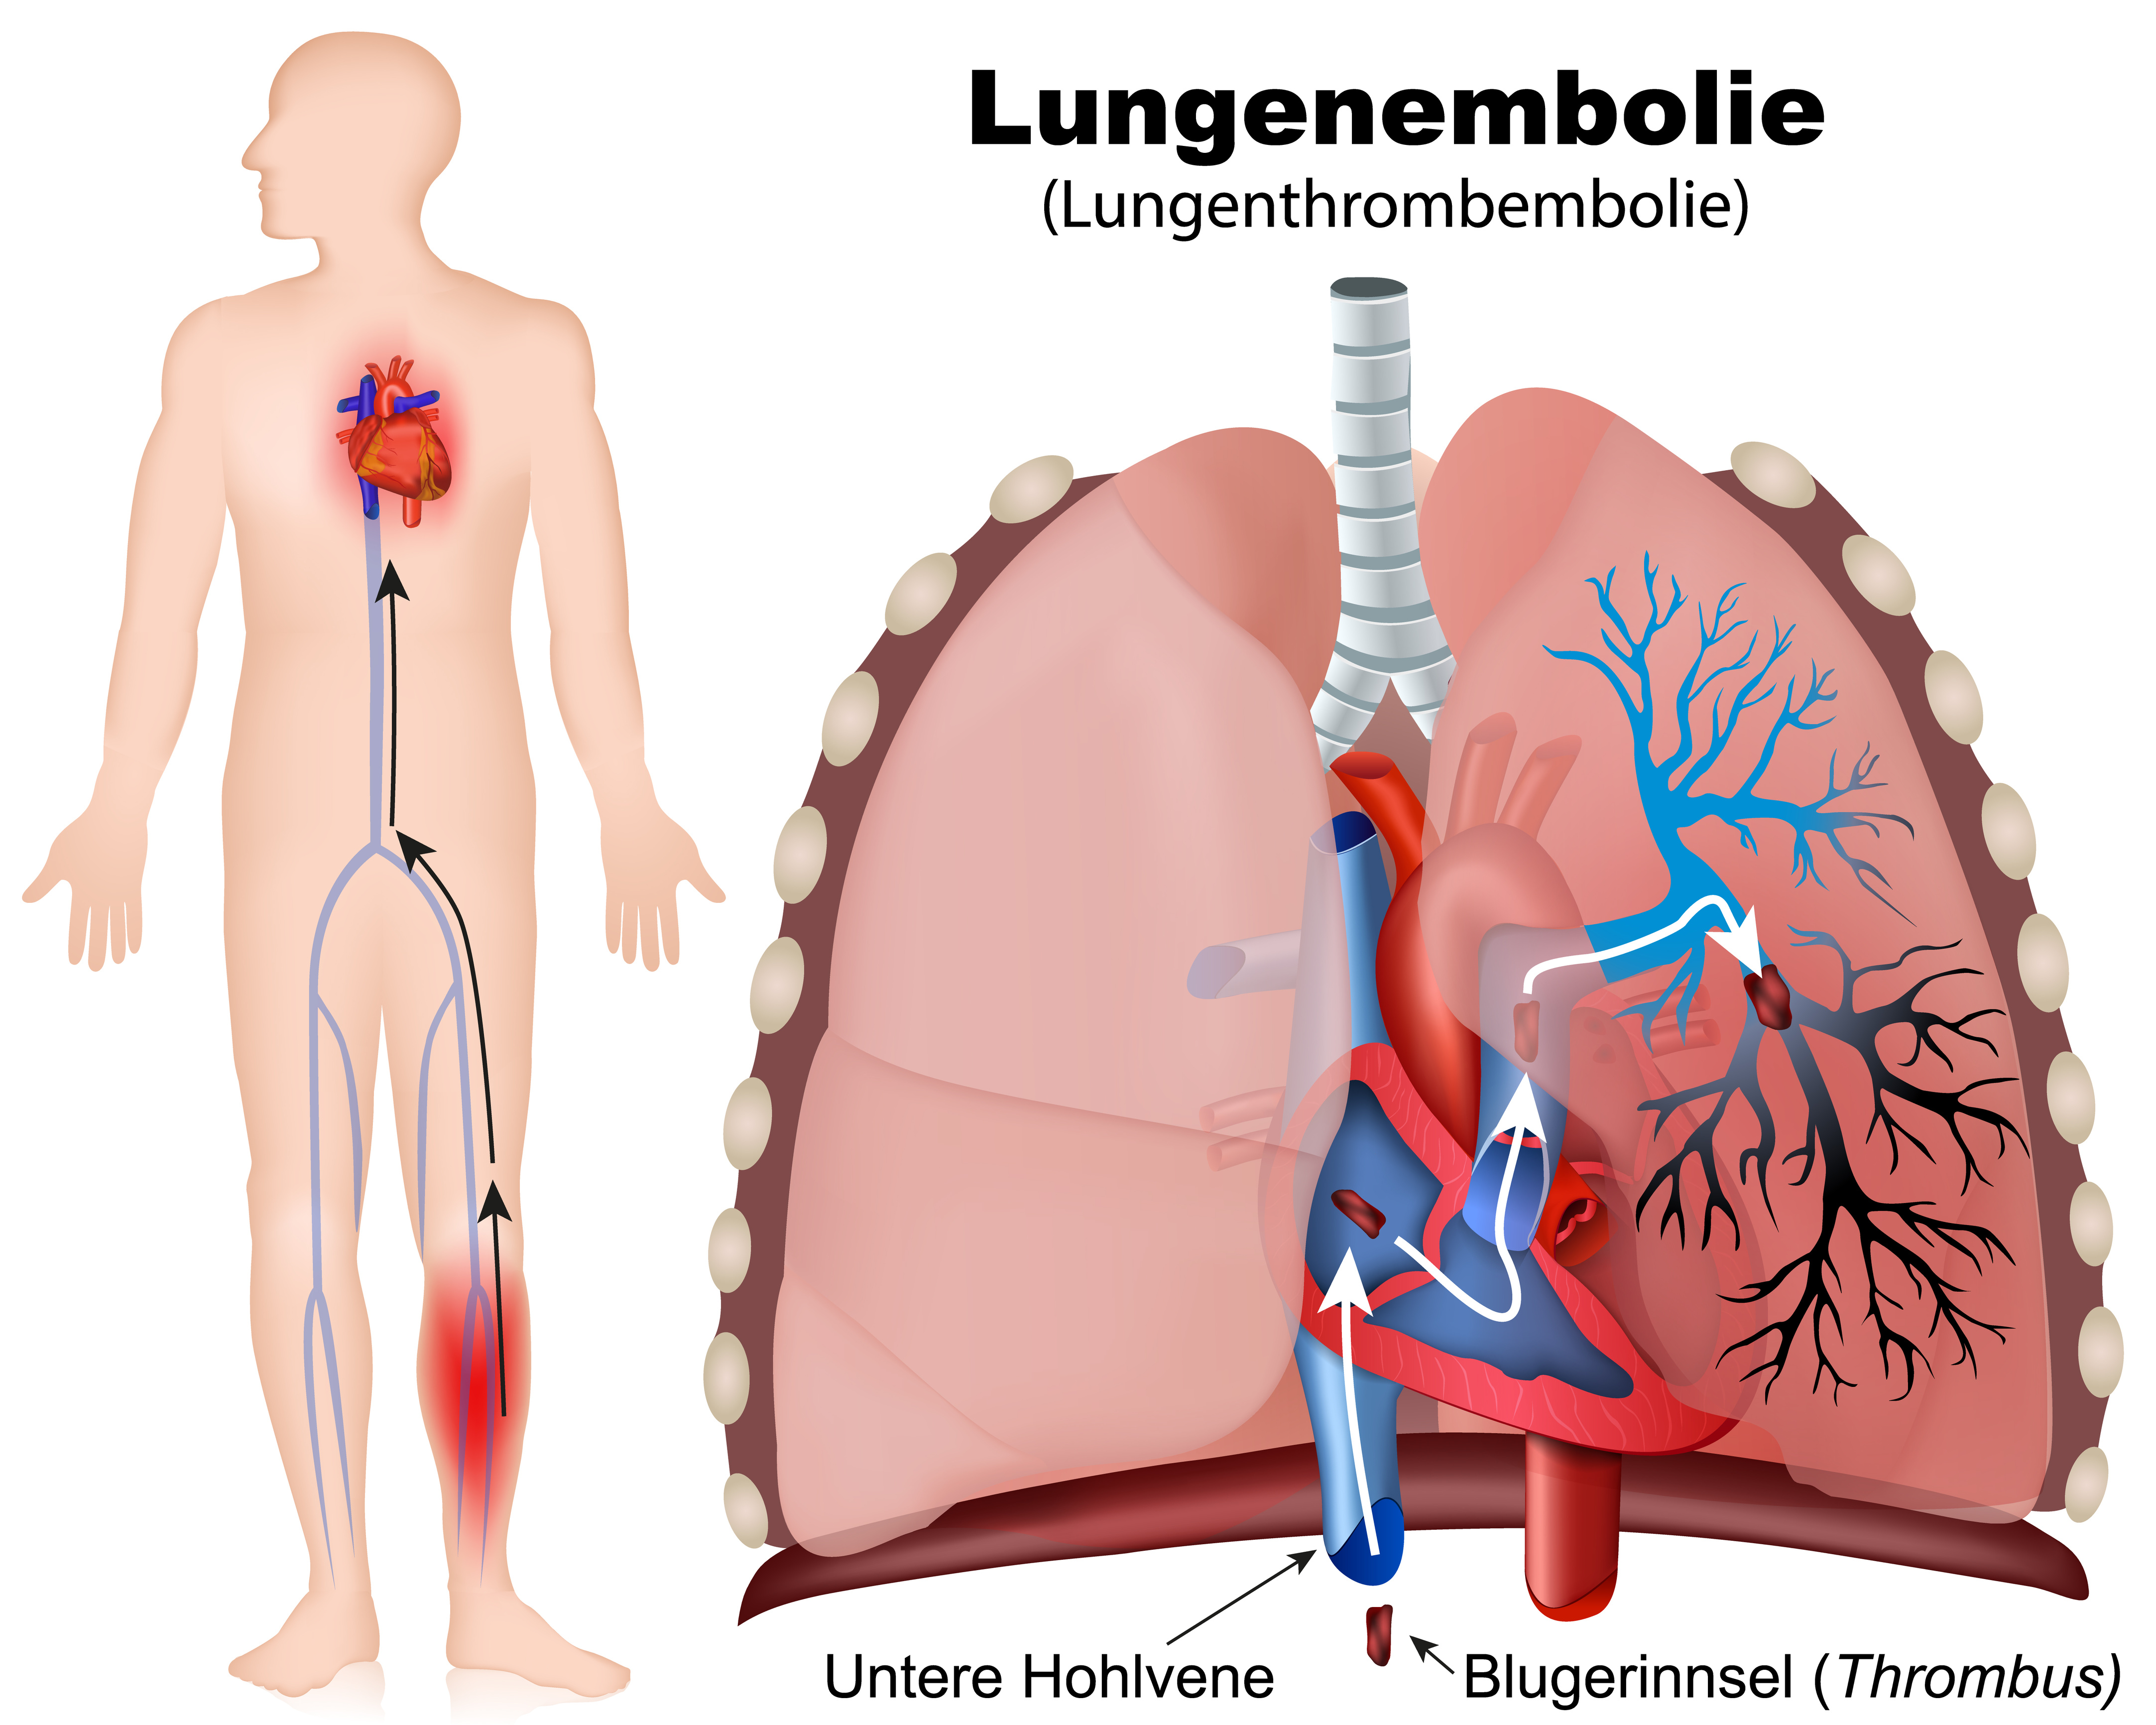 Тромбофлебит легочной артерии. Тромбоэмболия легочной артерии. Тромбоэмболия легочной артерии (Тэла). 1. Тромбоэмболия лёгочной артерии. Тромбоэмболия а8 легочной артерии.